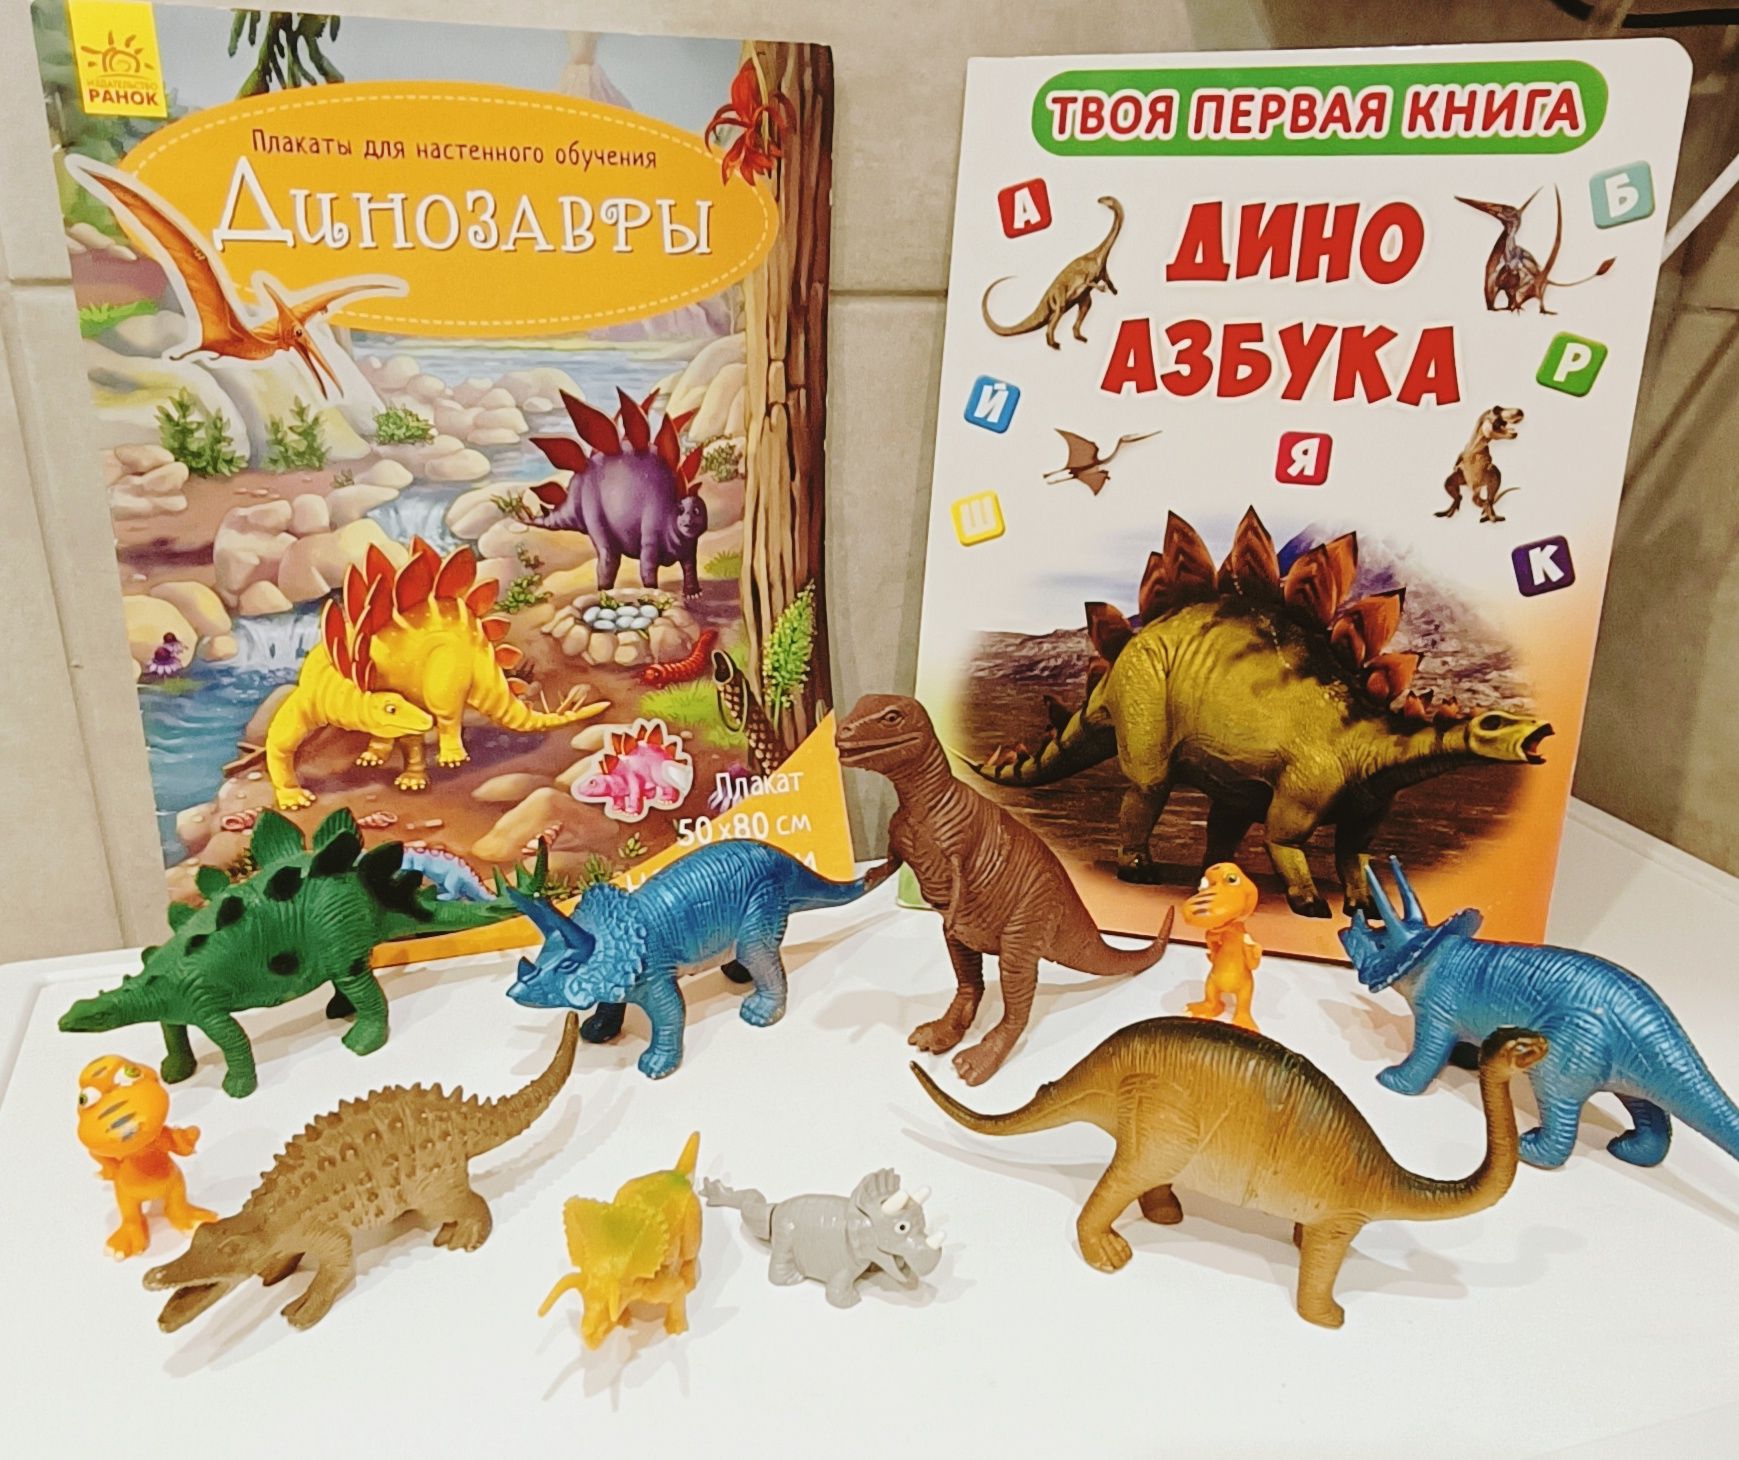 Фігурки динозаврів 10 шт. В подарунок плакат з наліпками і азбука.